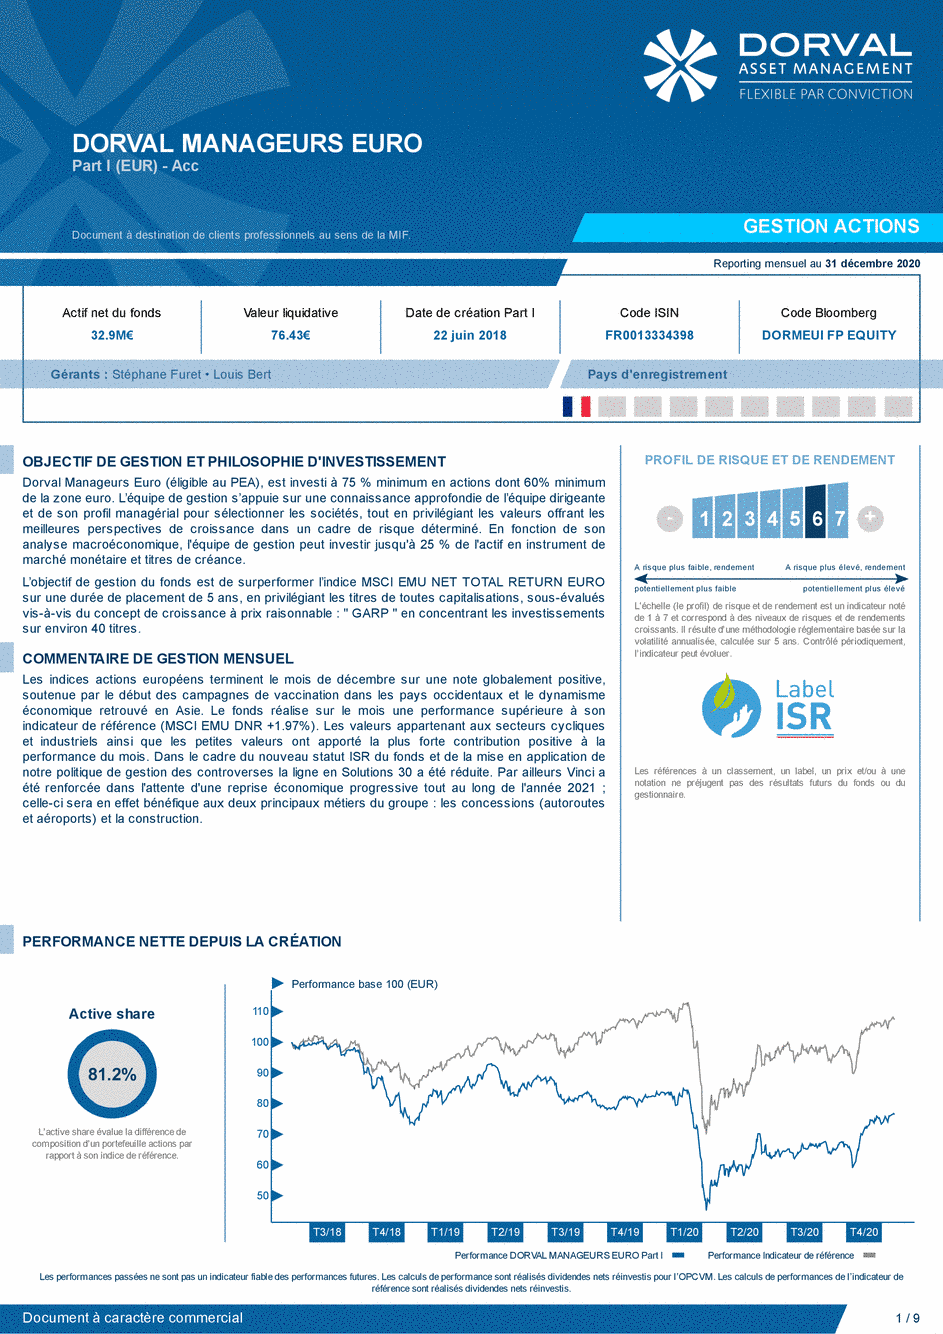 Reporting DORVAL MANAGEURS EURO Part I - 31/12/2020 - Français